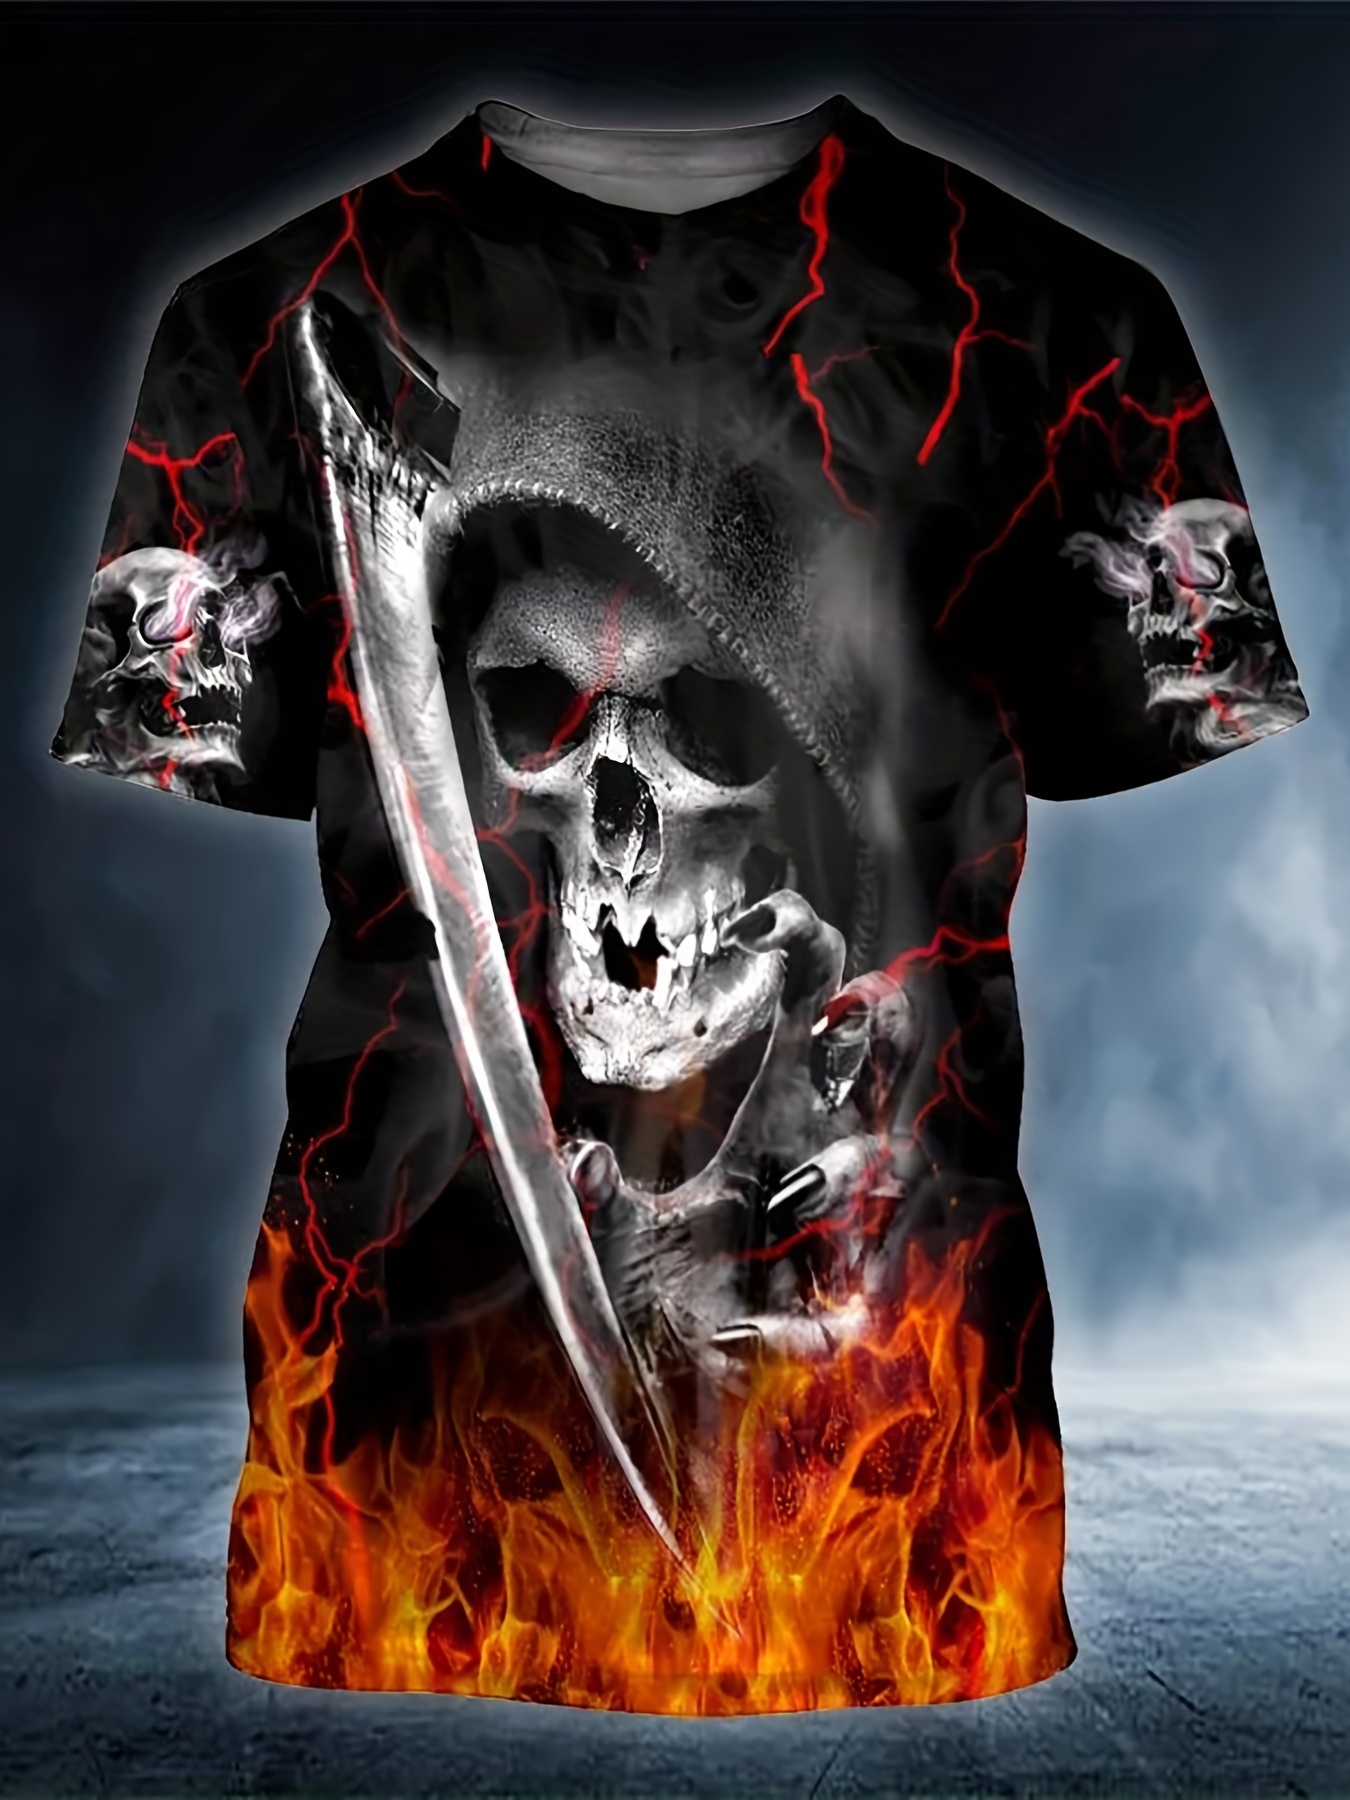 Oversized Homme Skull Graphic T-shirt